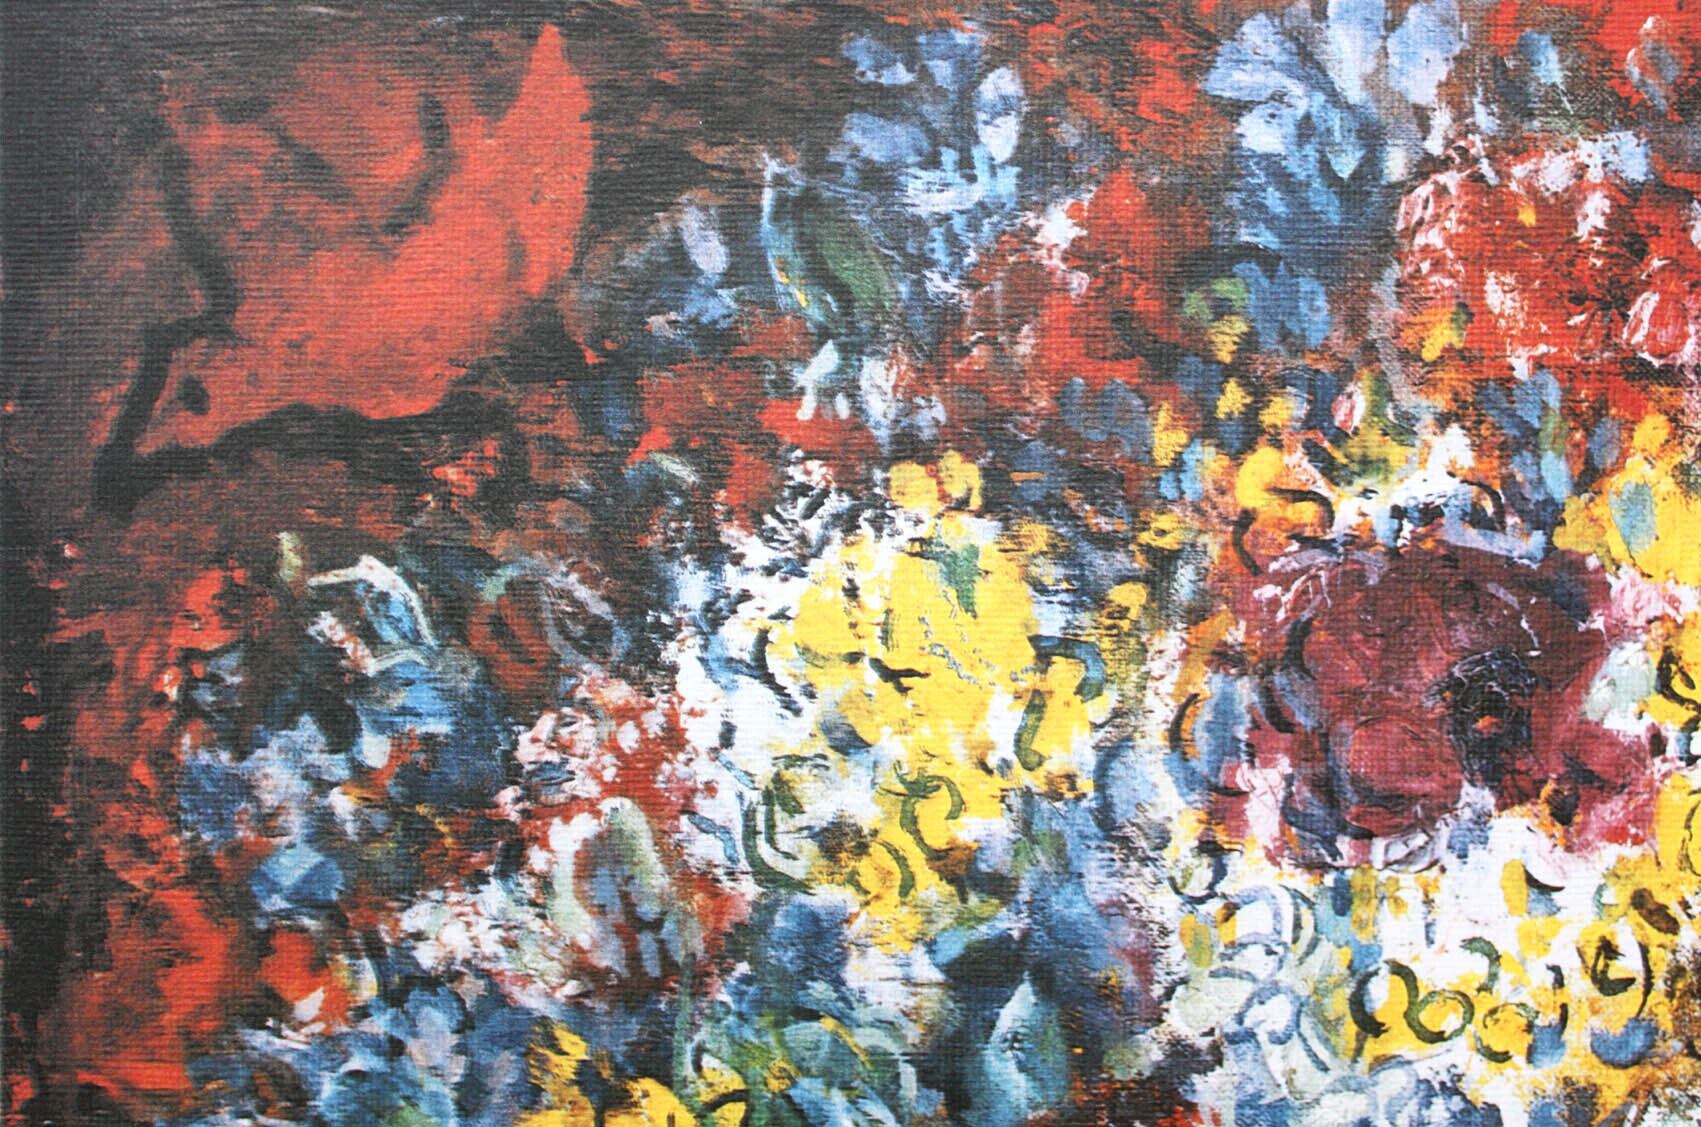 マルク・シャガール作品「恋人たちの花束」作品証明書・展示用フック・限定500部エディション付複製画リトグラ